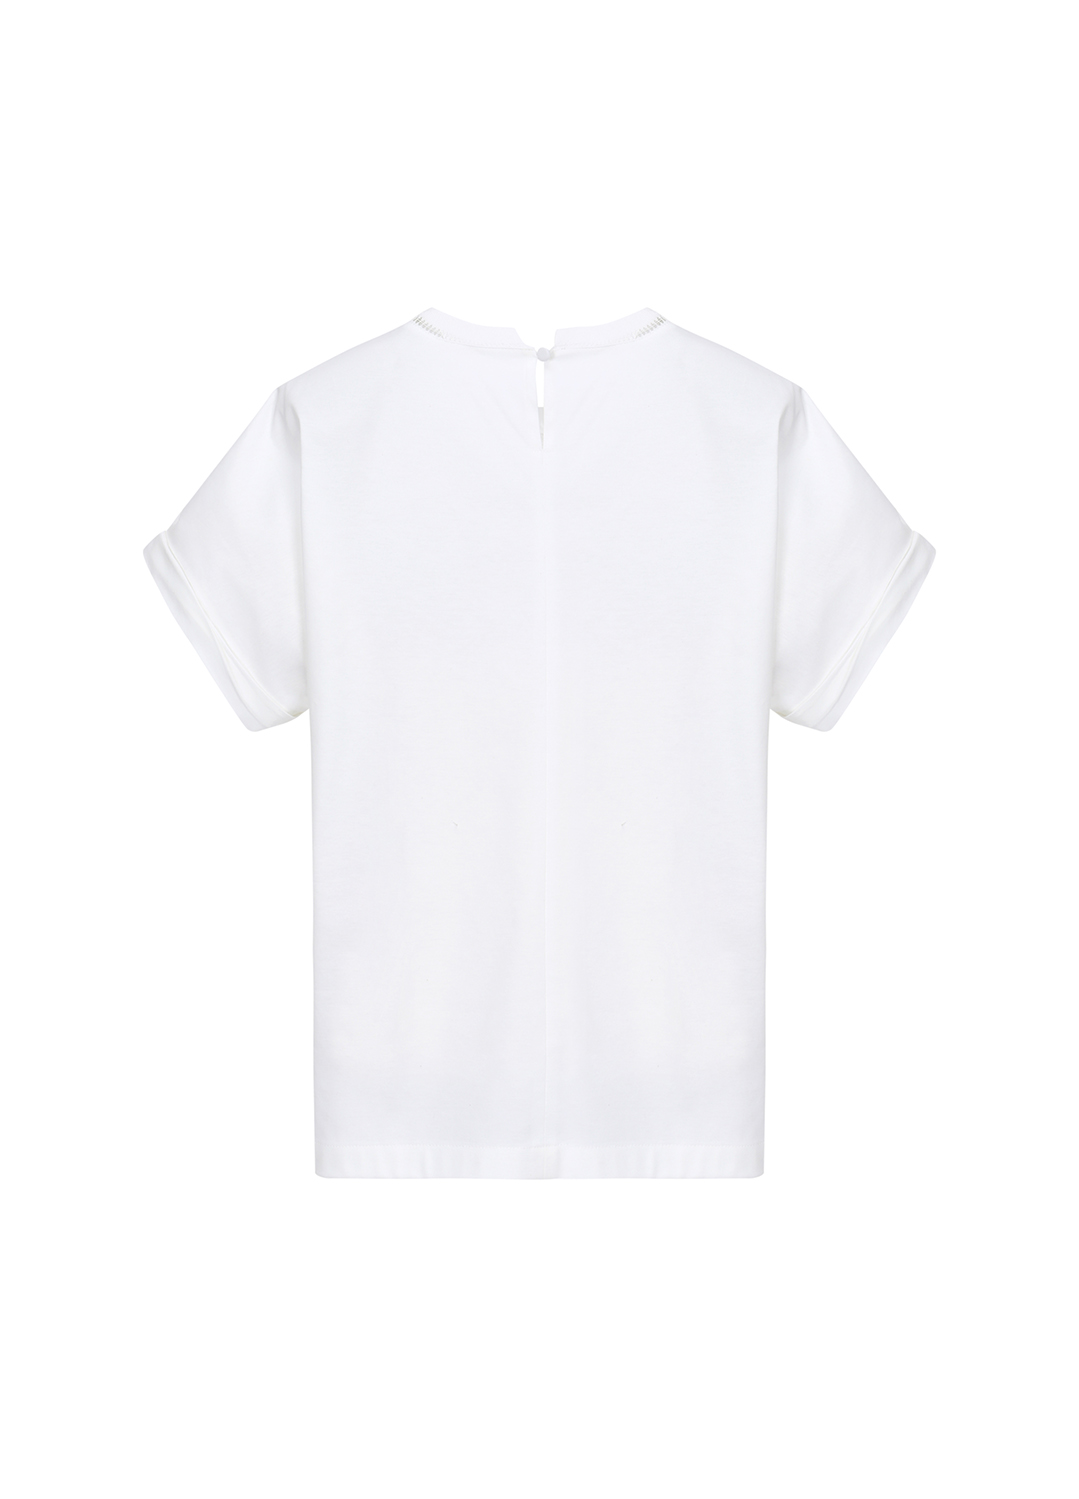 코튼 혼방 배색 레이스 포인트 티셔츠(sp역시즌 종료 비노출 22.10.21)_WHITE_7